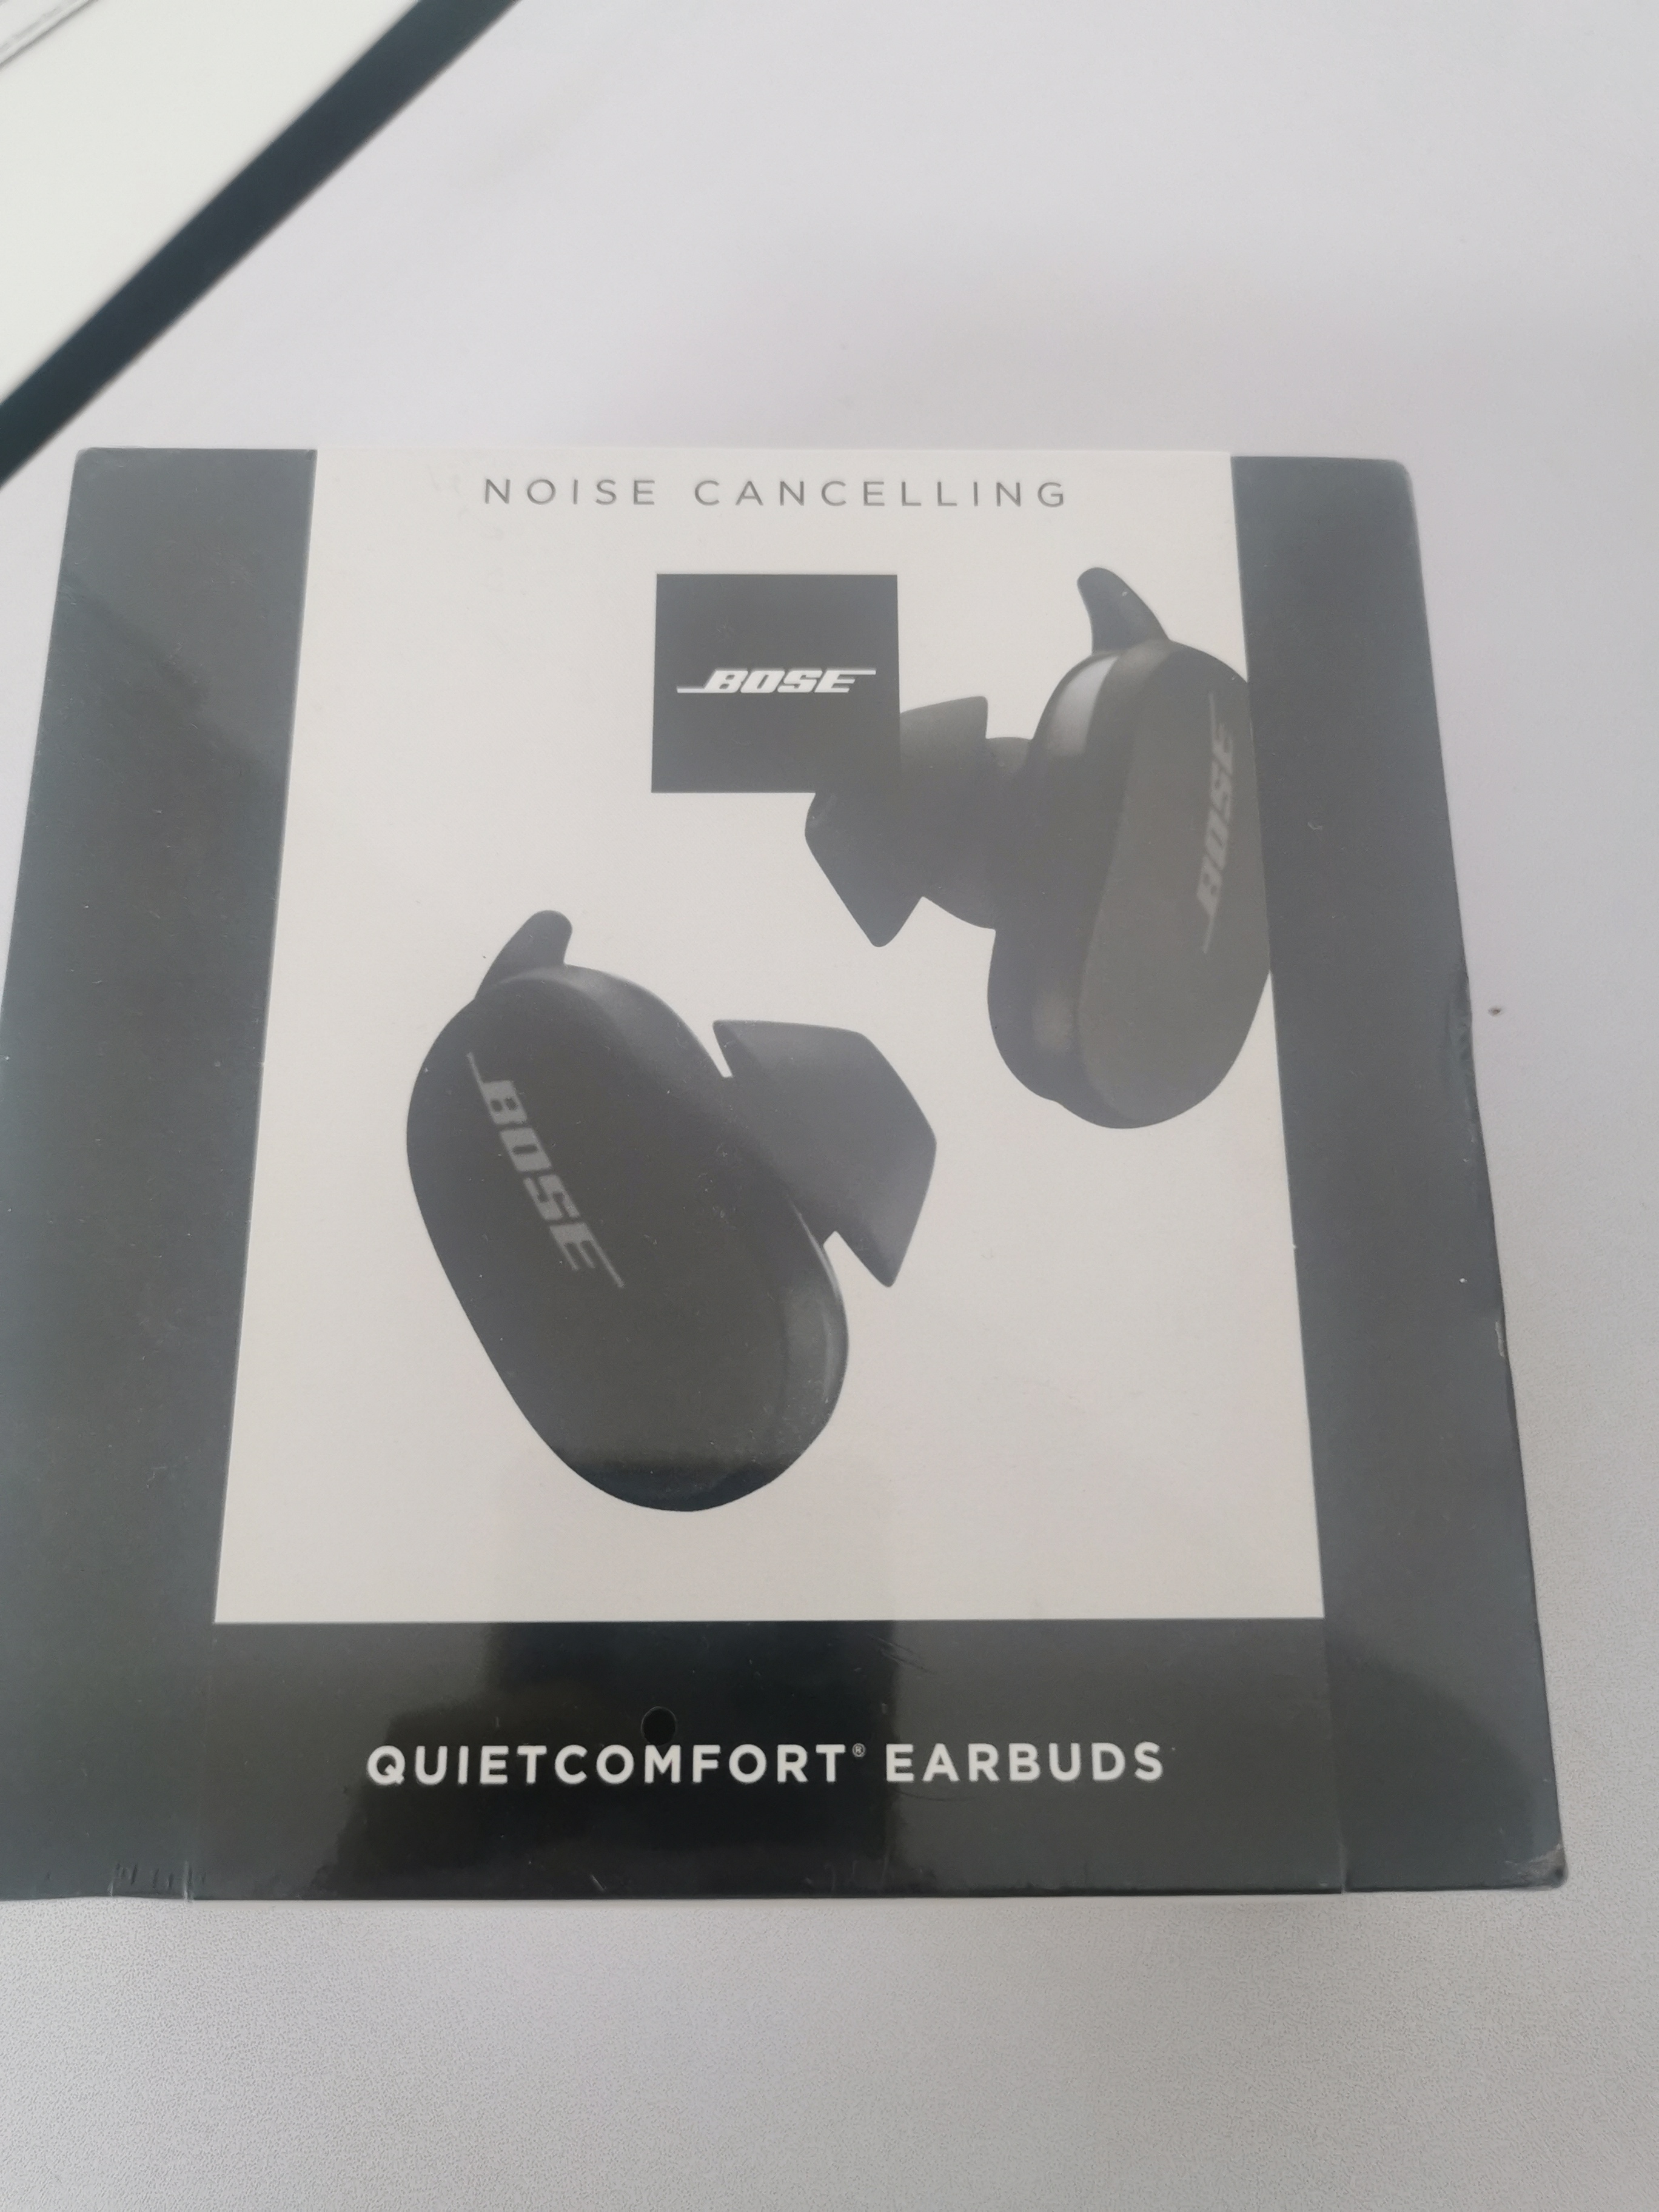 תמונה 2 ,Bose quietcomfort earbuds למכירה בירושלים  סלולרי  אוזניות